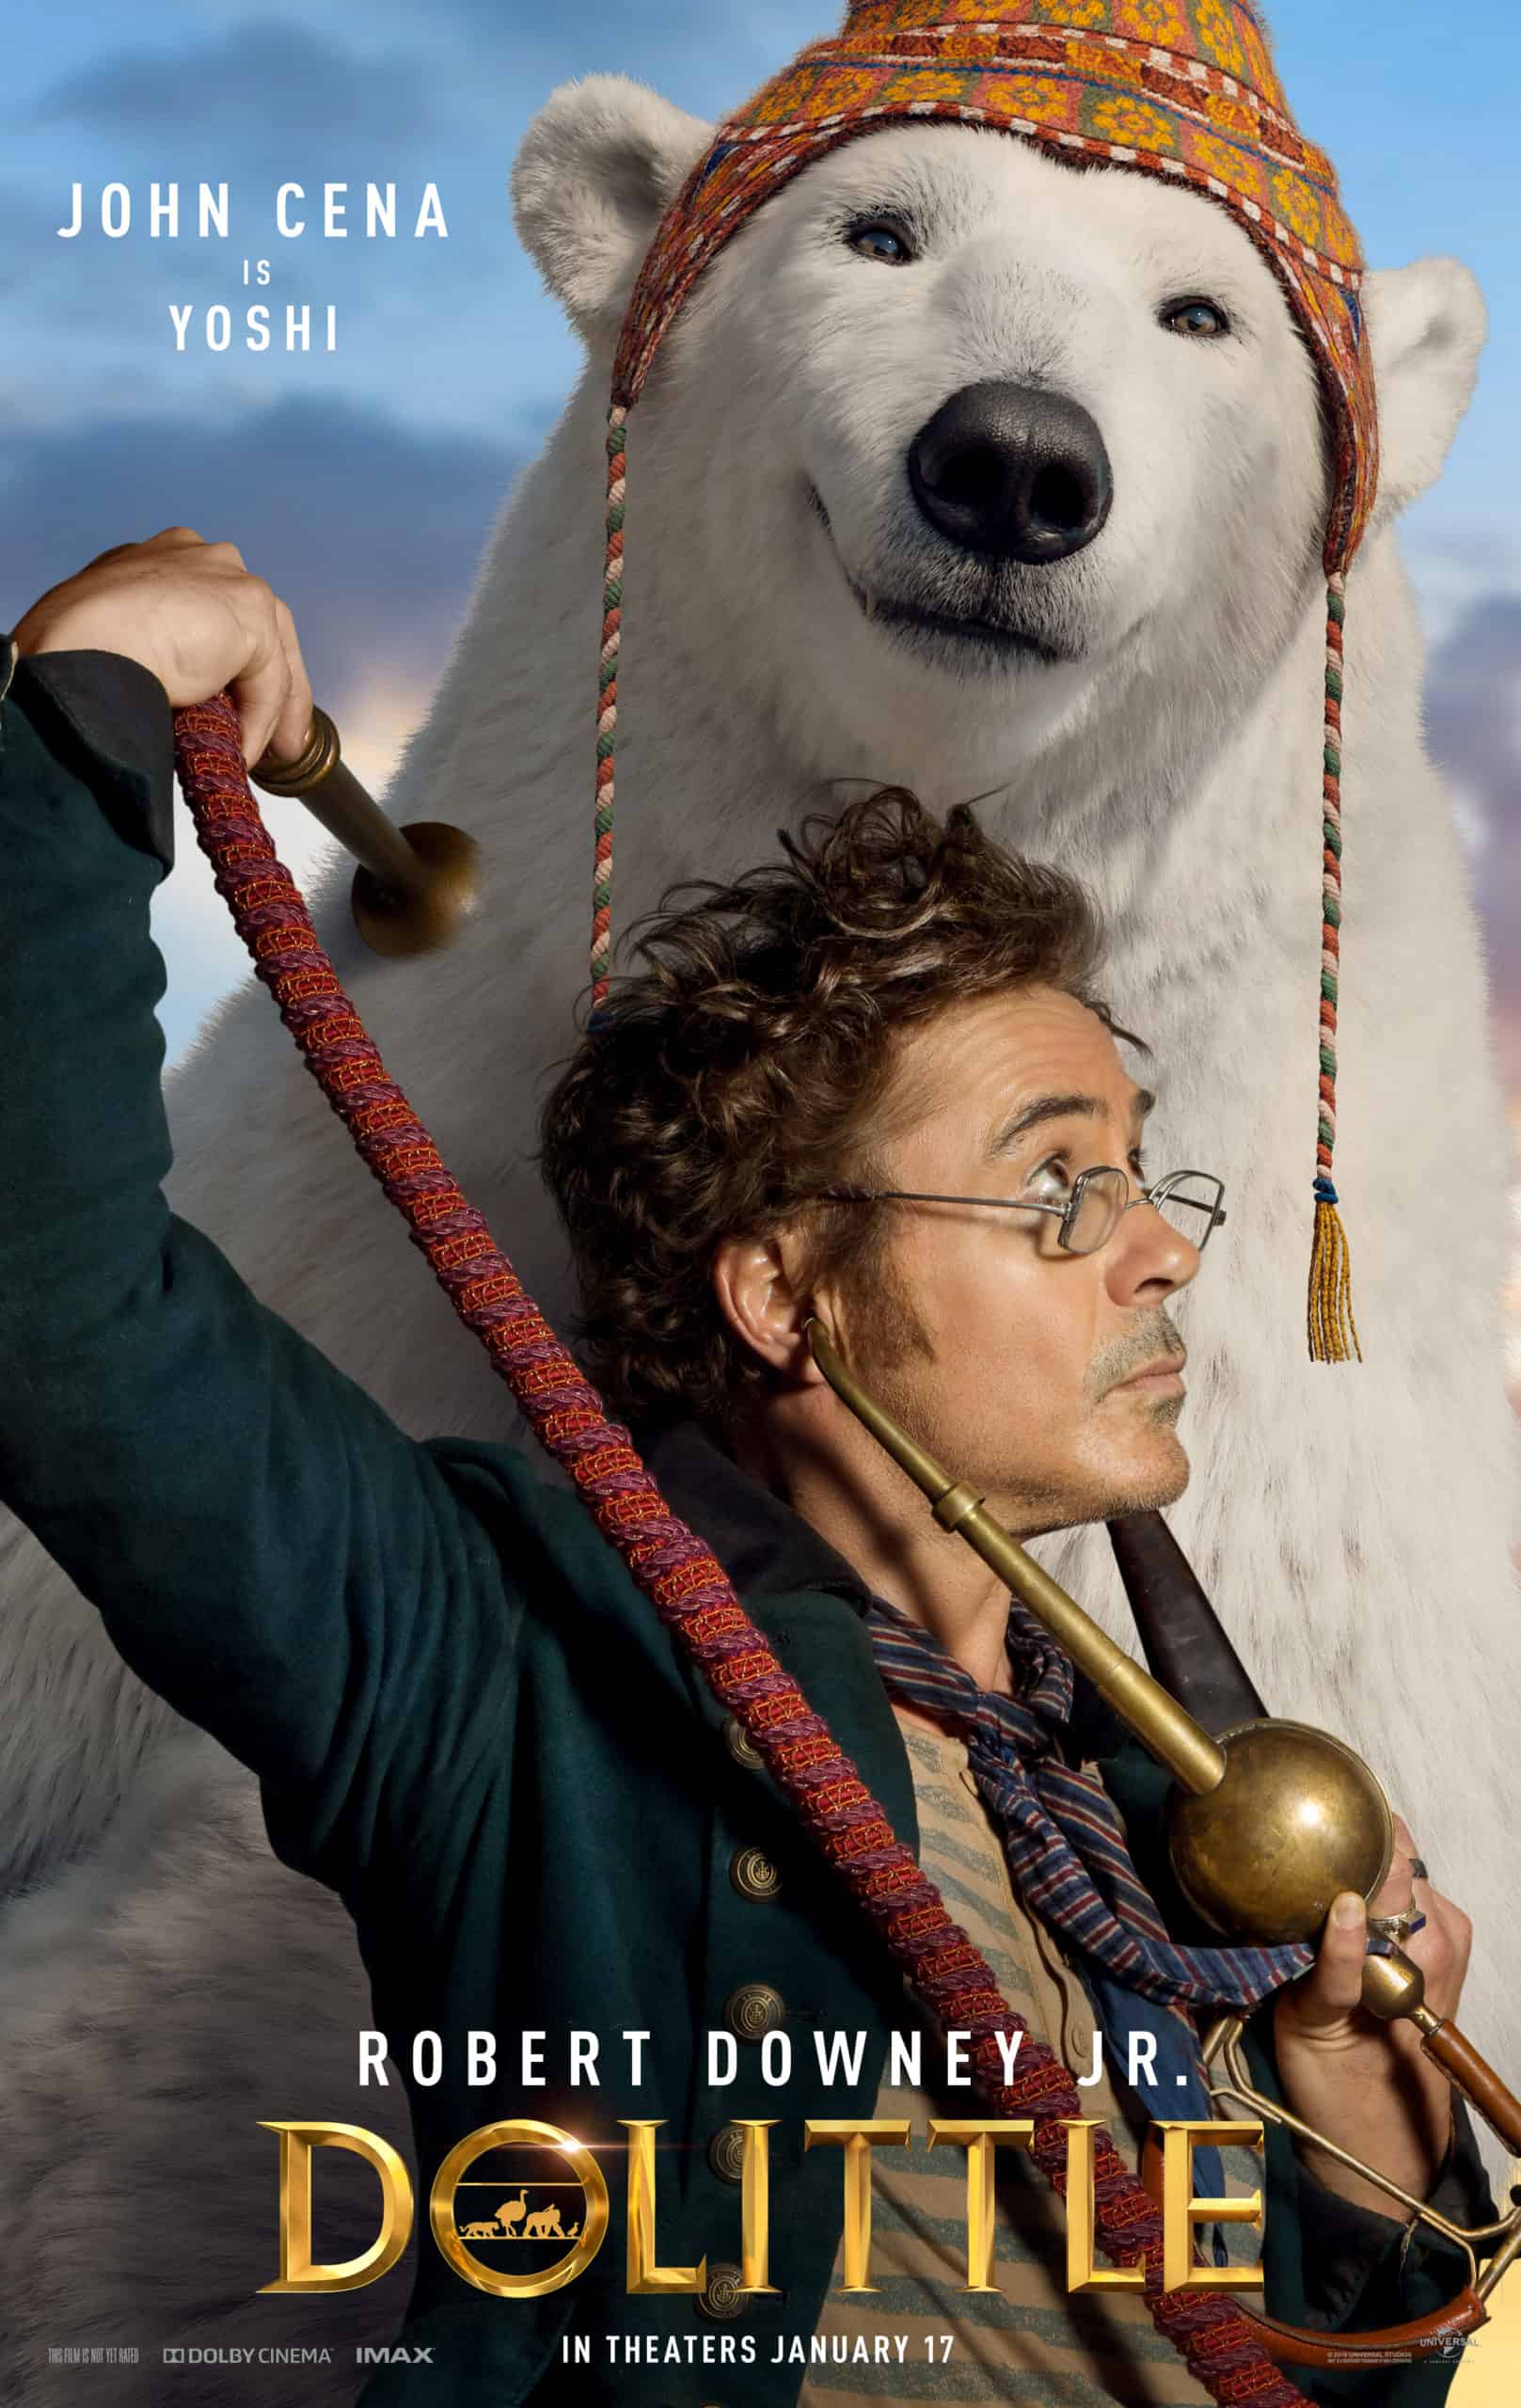 Poster for Dolittle starring Robert Downey Jr Polar Bear